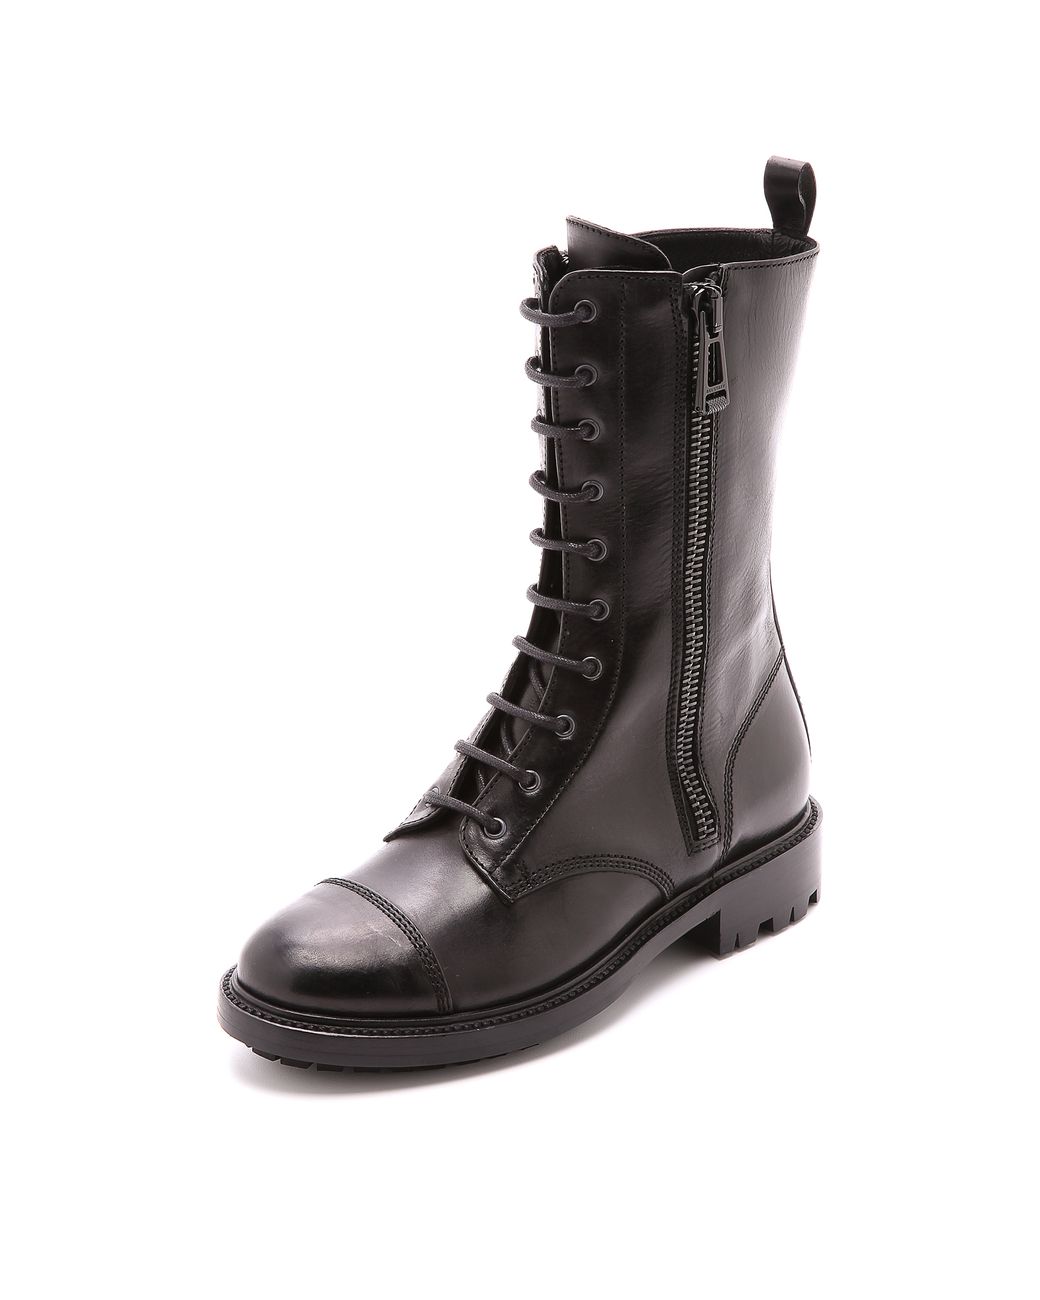 Belstaff Combat Boots - Black | Lyst Canada